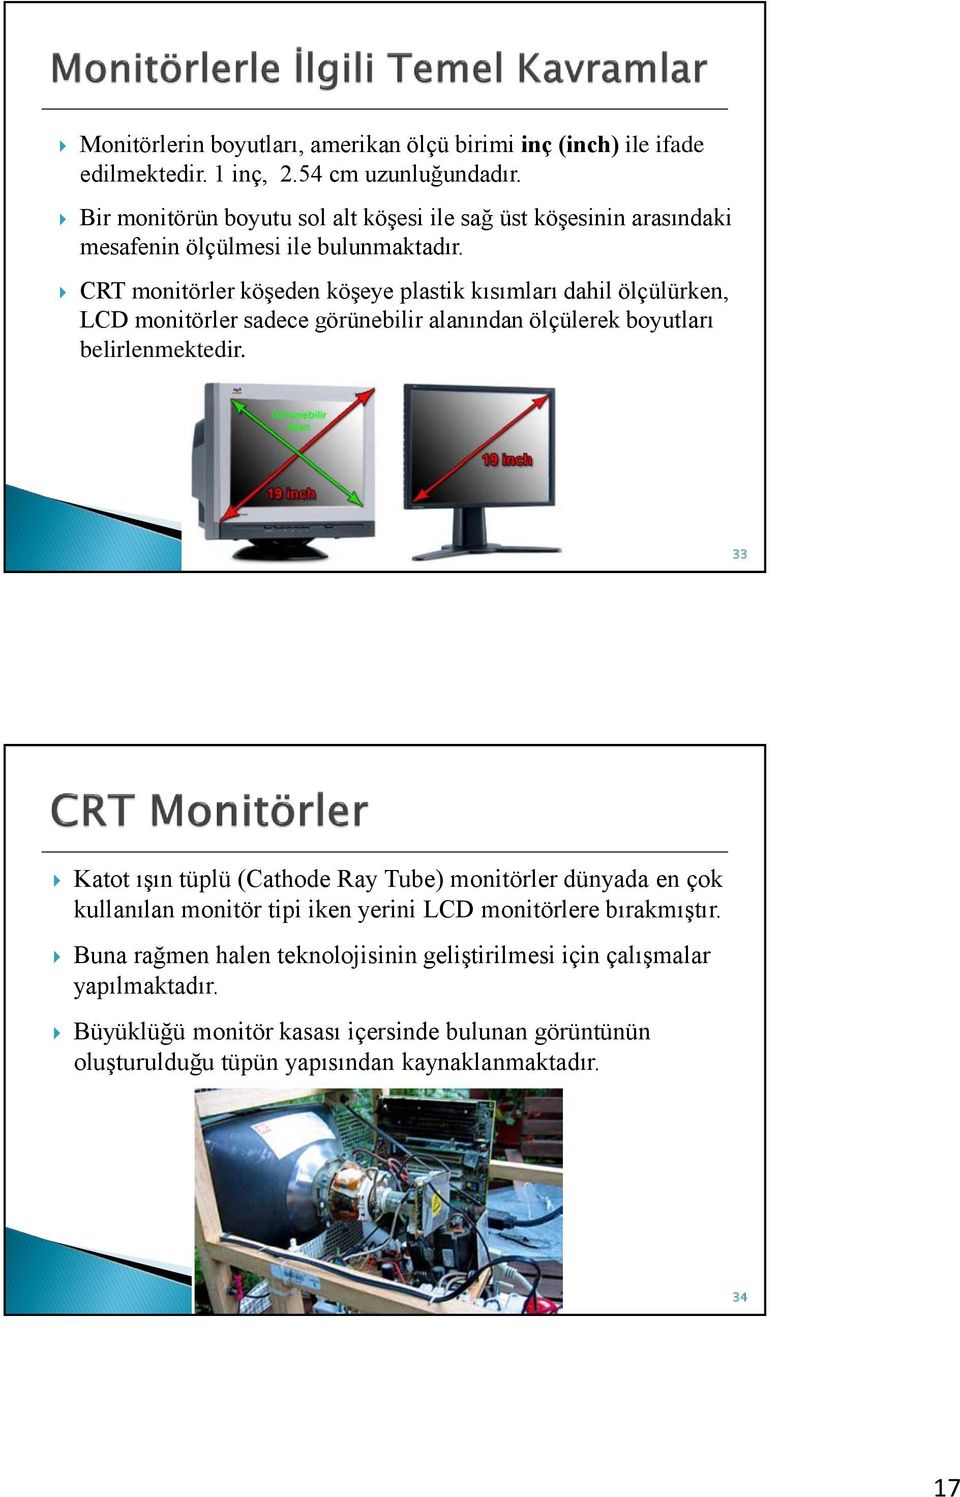 CRT monitörler köşeden köşeye plastik kısımları dahil ölçülürken, LCD monitörler sadece görünebilir alanından ölçülerek boyutları belirlenmektedir.